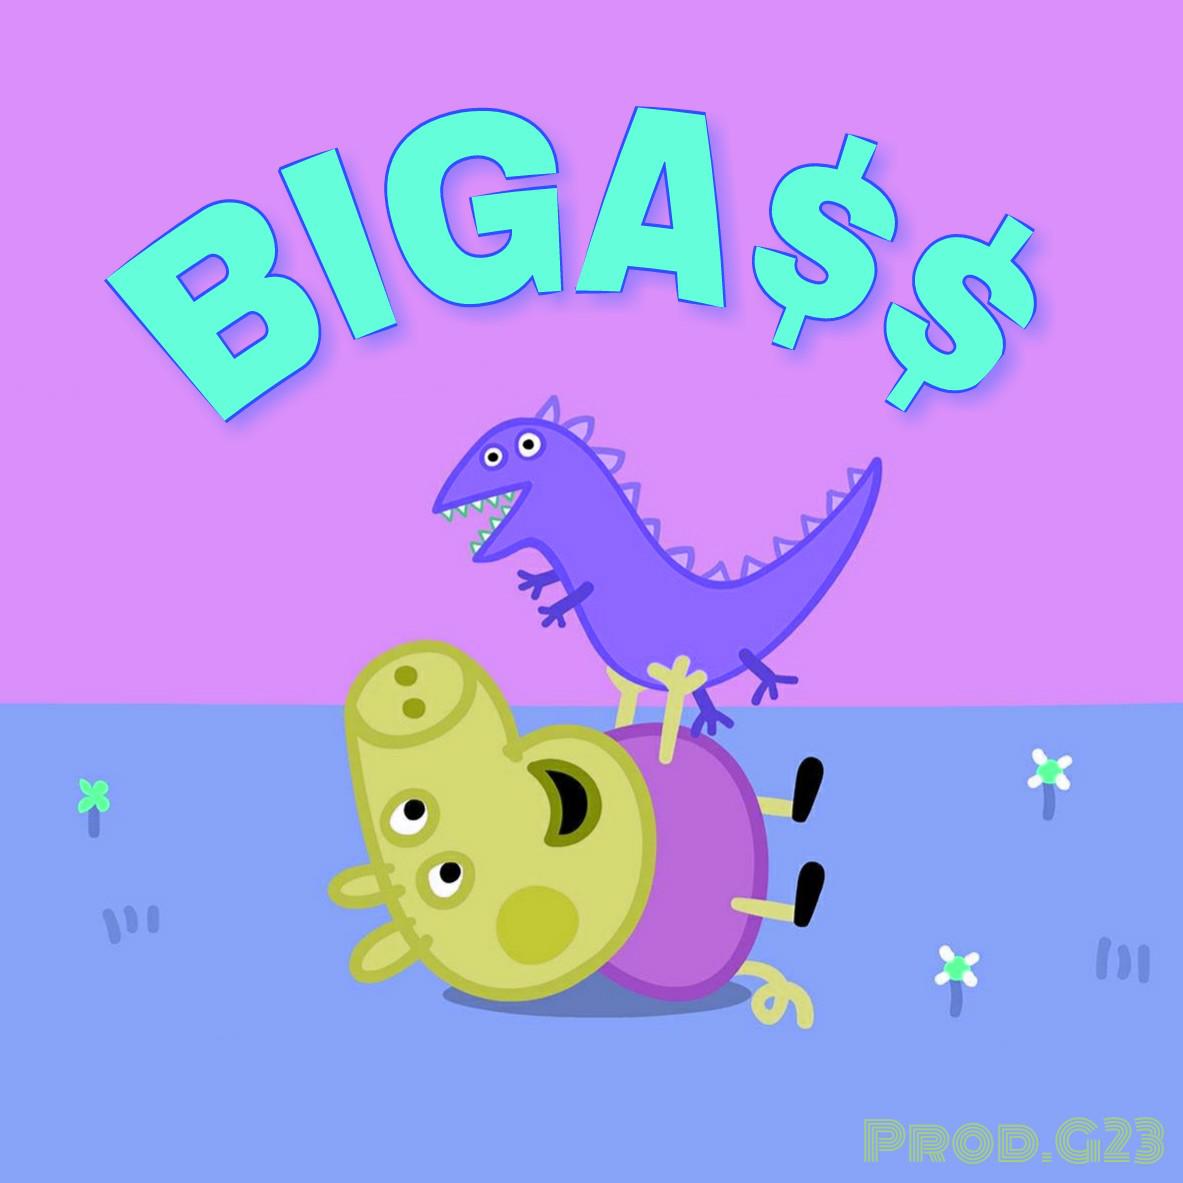 BIGA$$